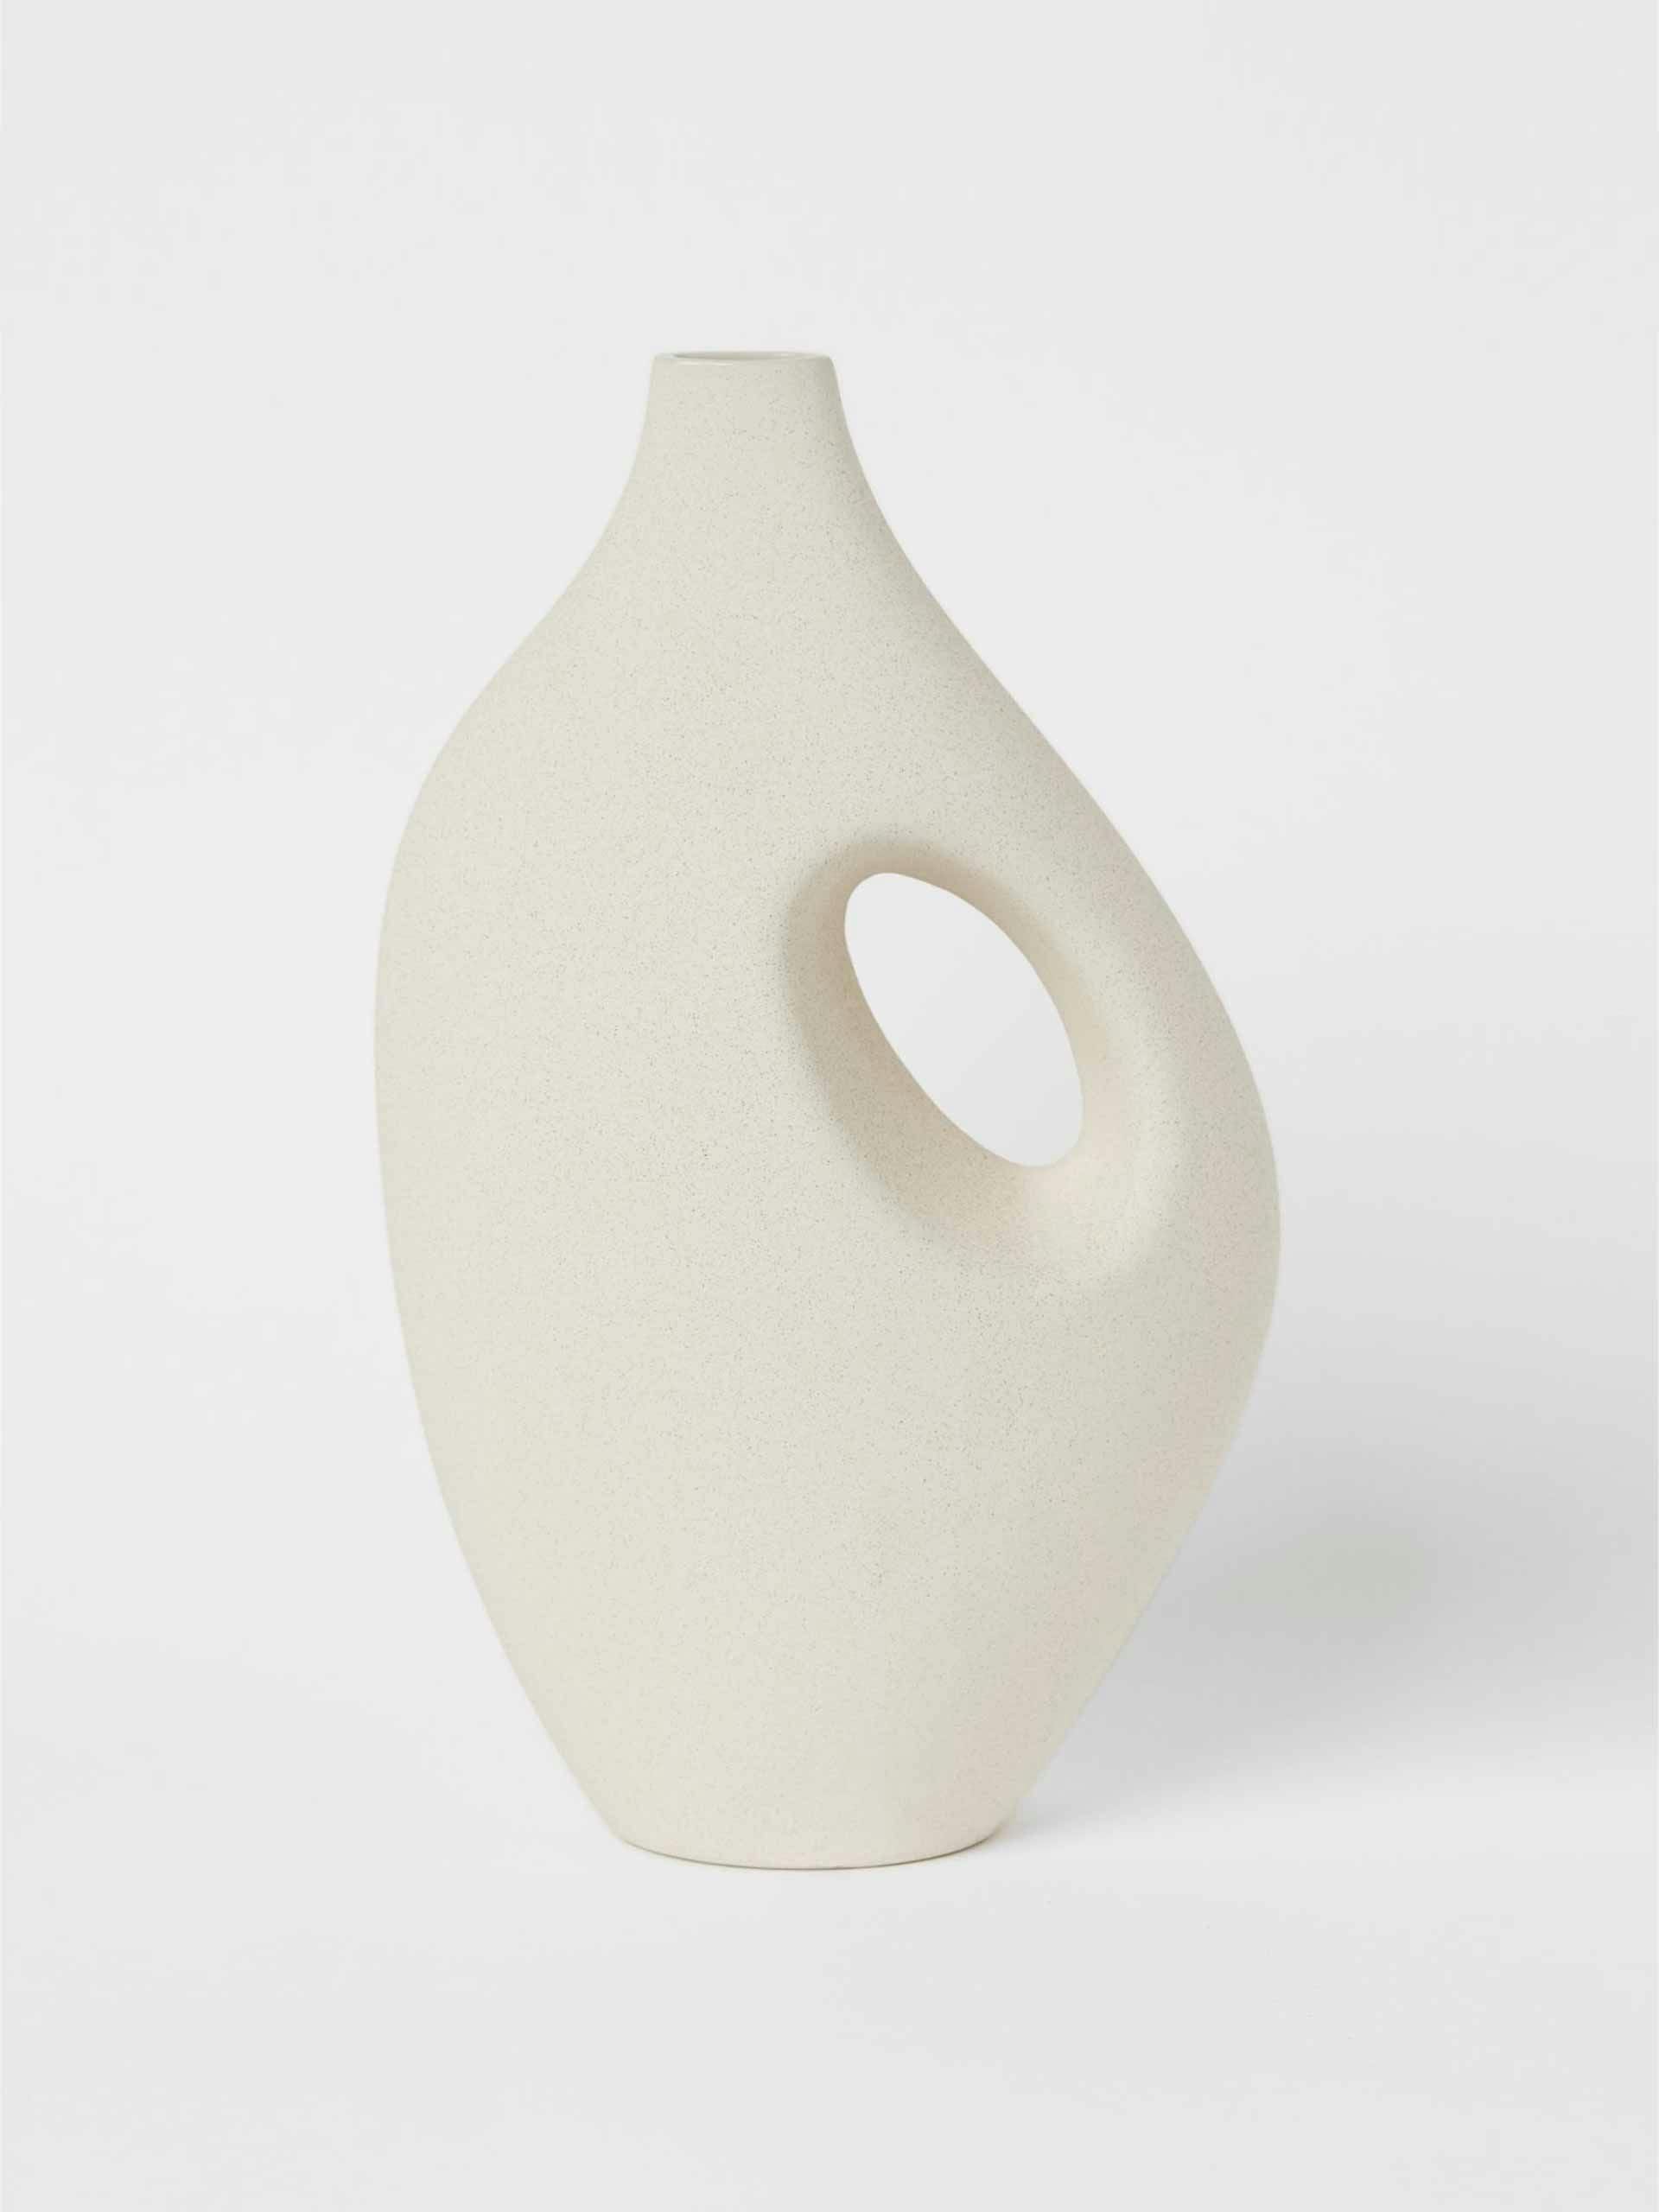 Large stoneware vase with handle